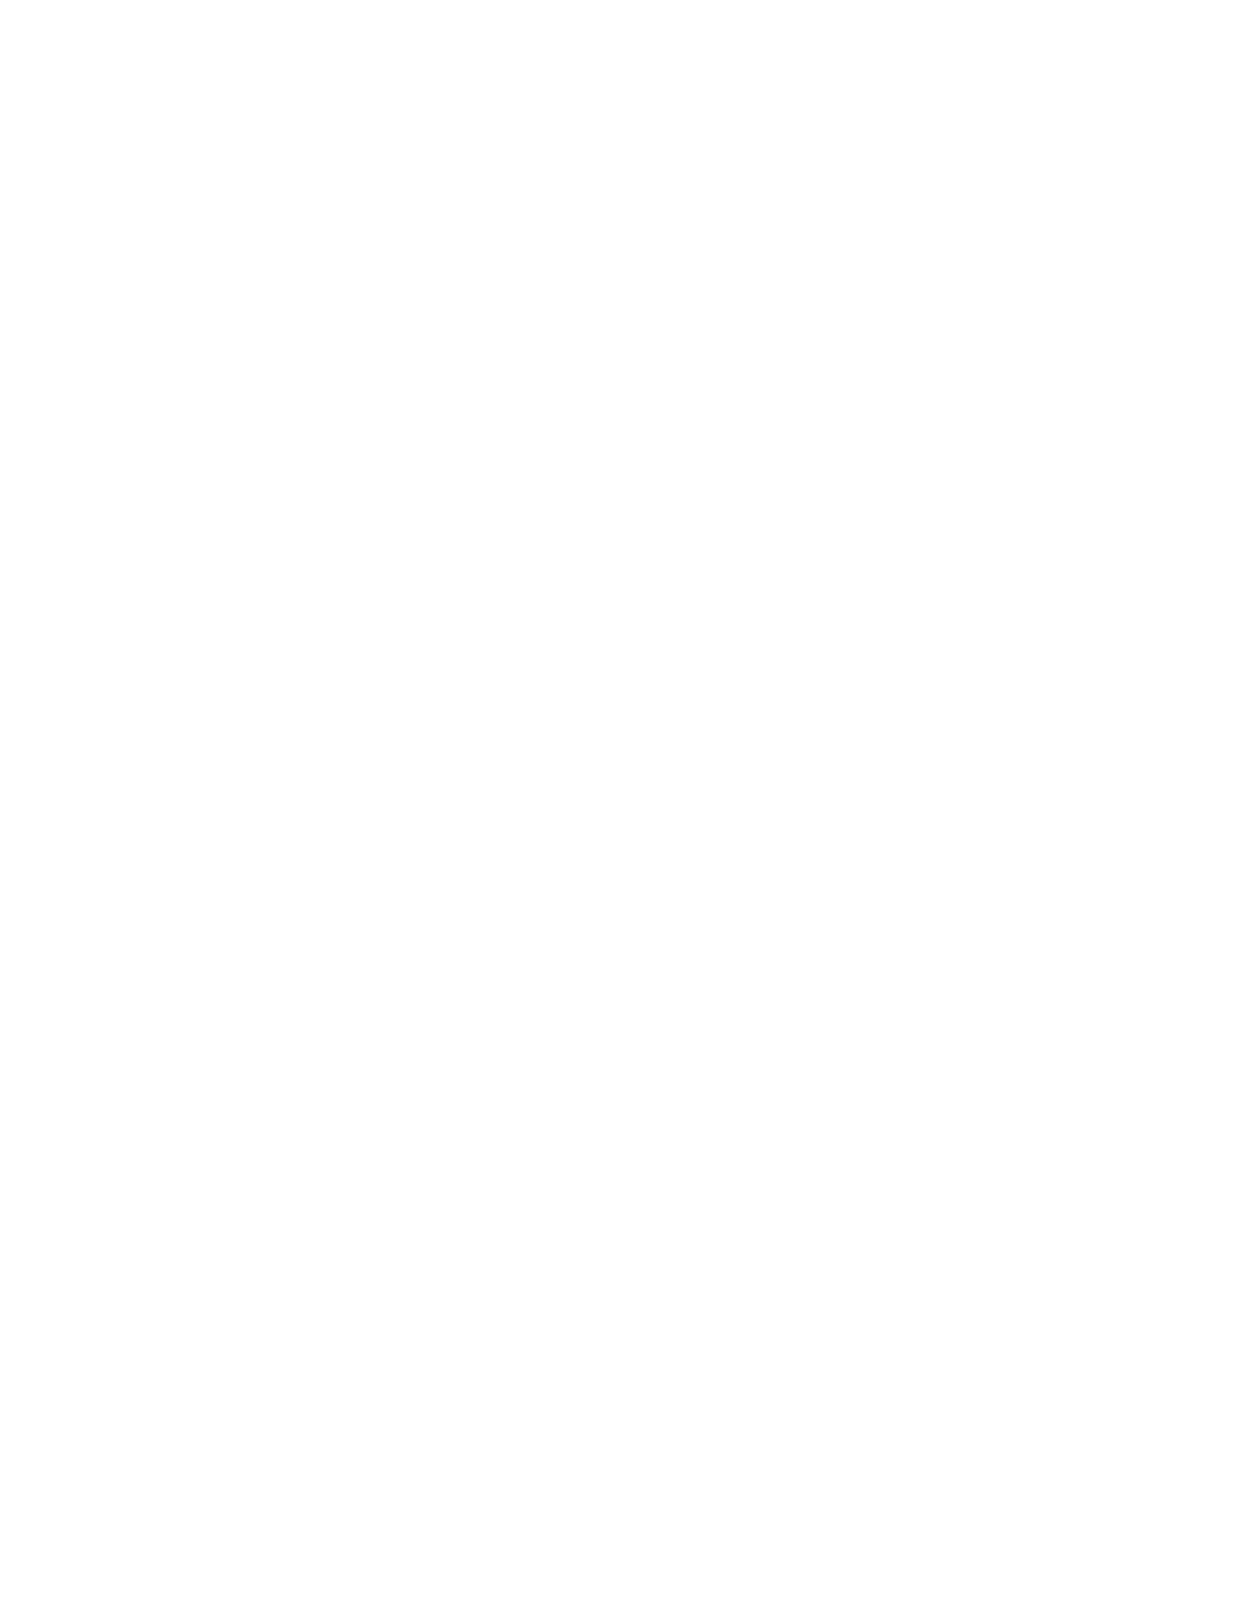 Palantir logo for dark backgrounds (transparent PNG)